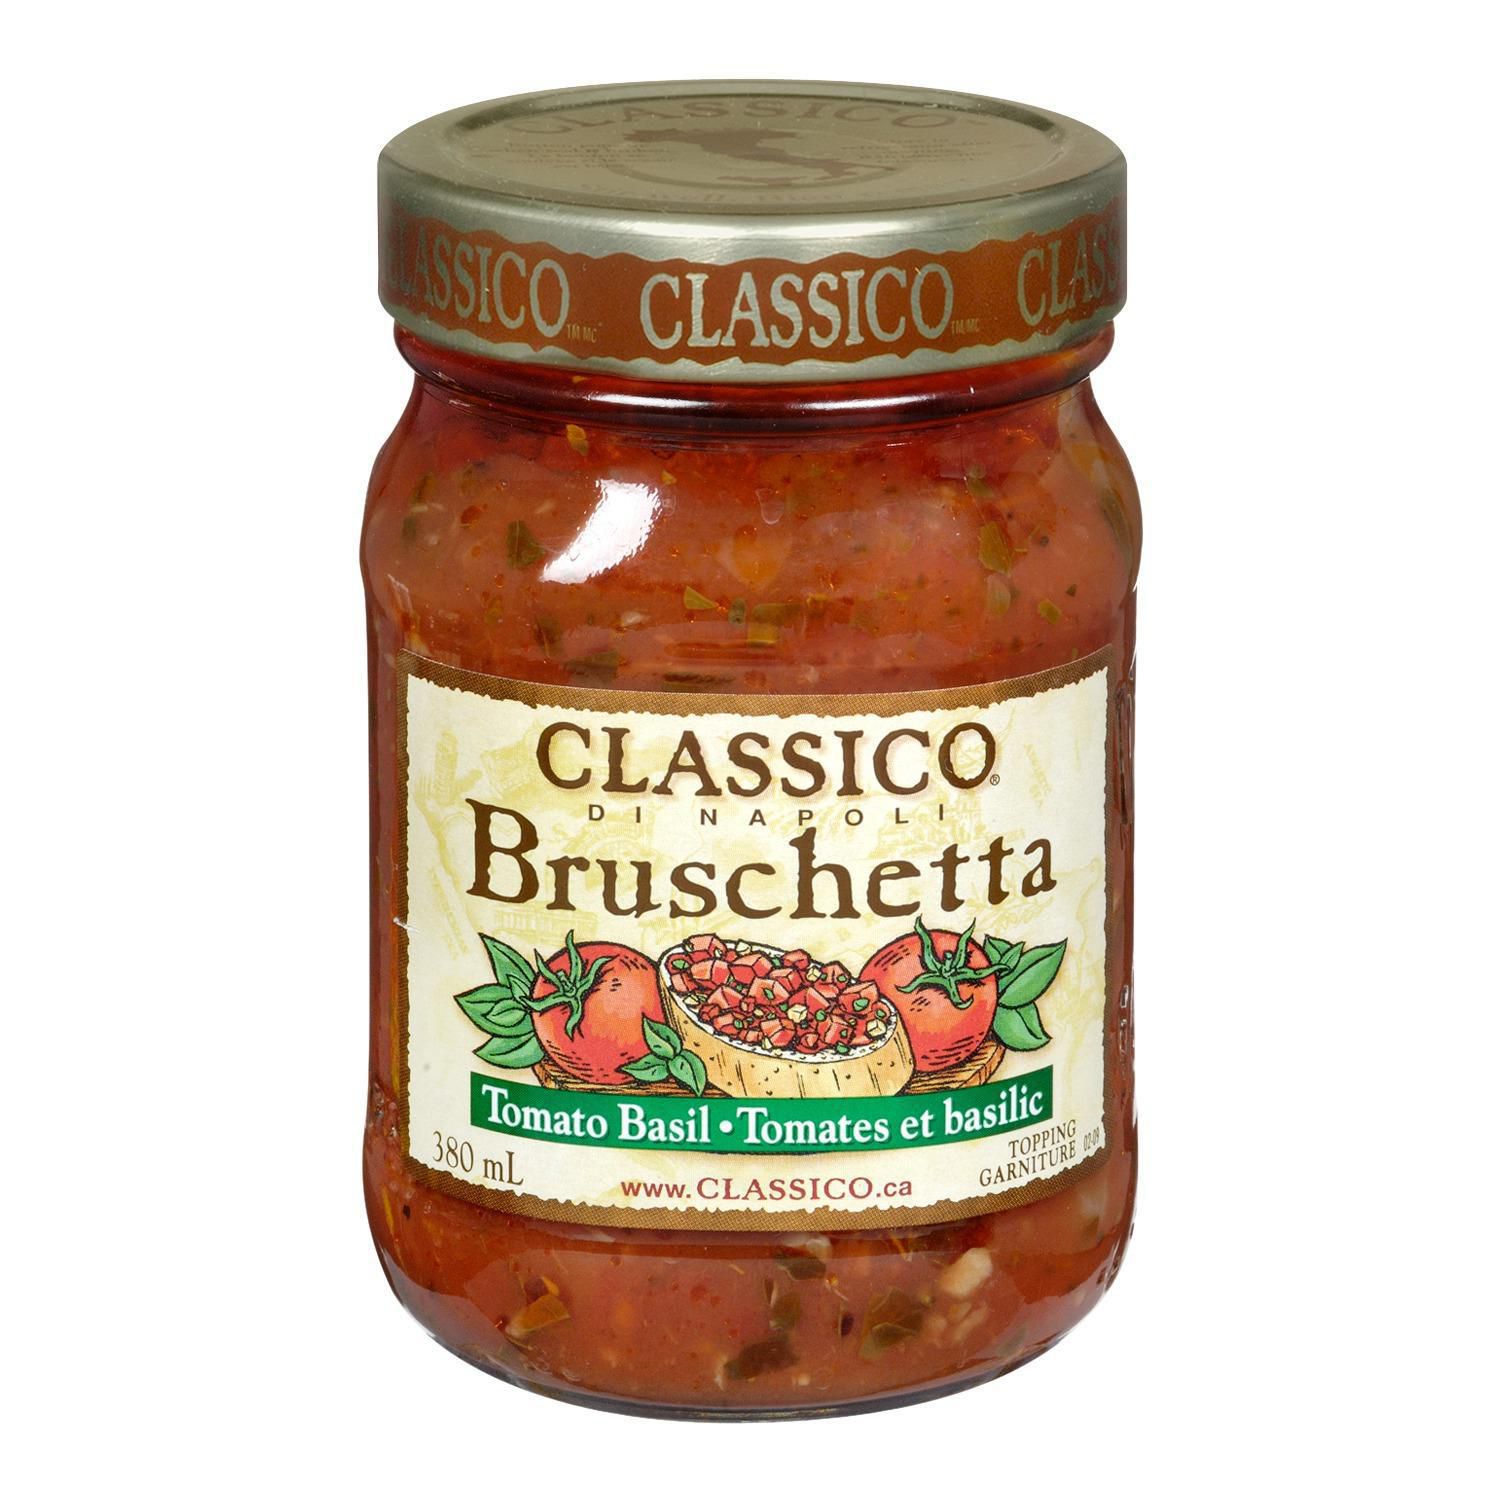 Classico Bruschetta di Napoli Tomato Basil | Walmart Canada